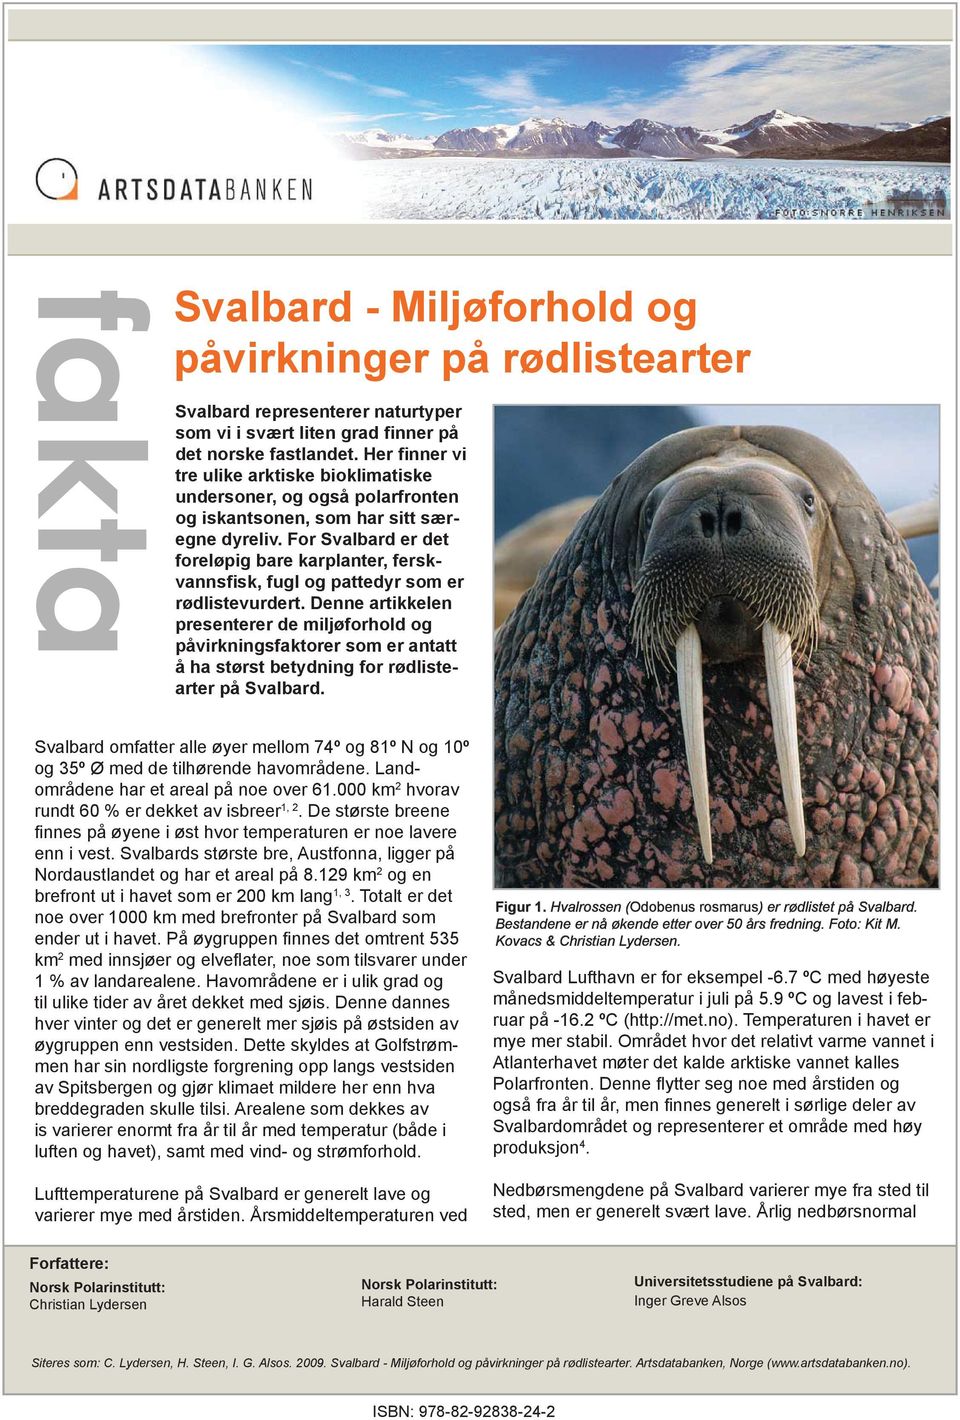 For Svalbard er det foreløpig bare karplanter, ferskvannsfisk, fugl og pattedyr som er rødlistevurdert.